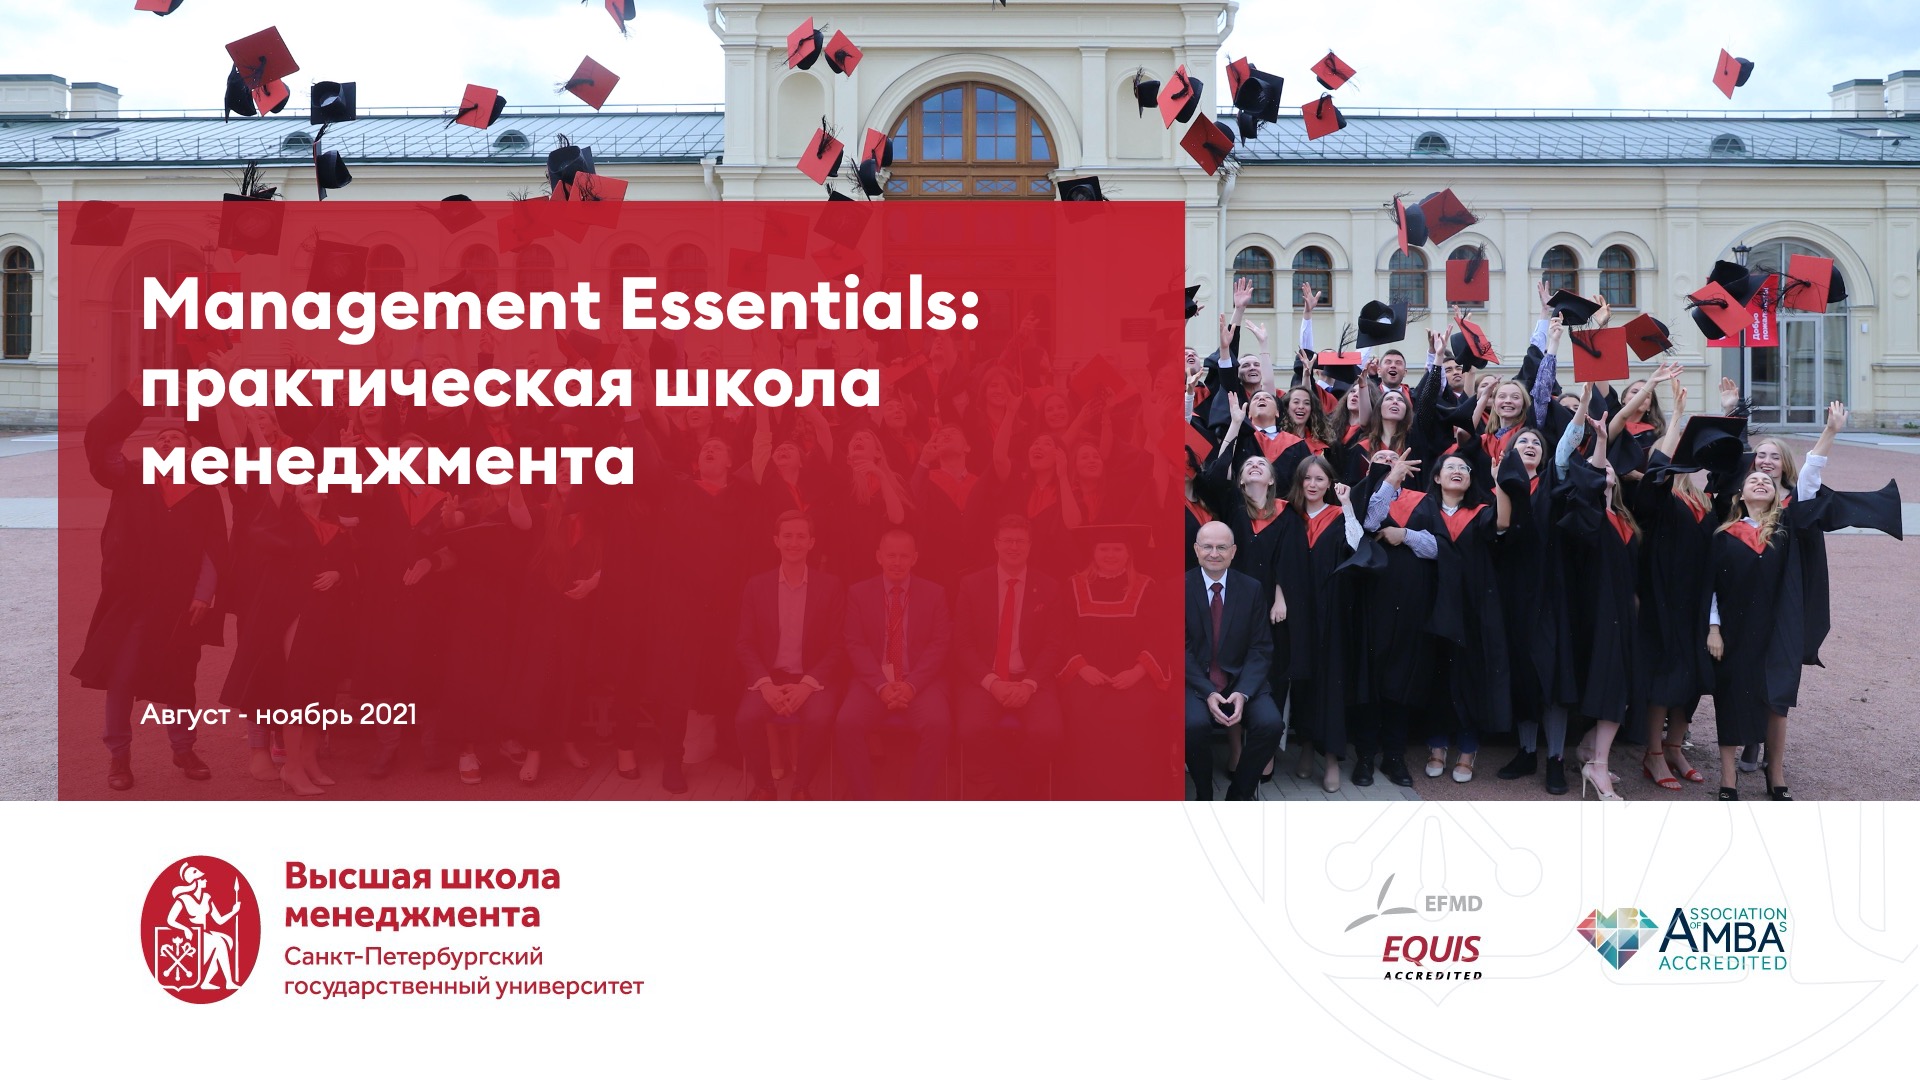 Management Essentials: Практическая школа менеджмента для ВТБ Группа 2